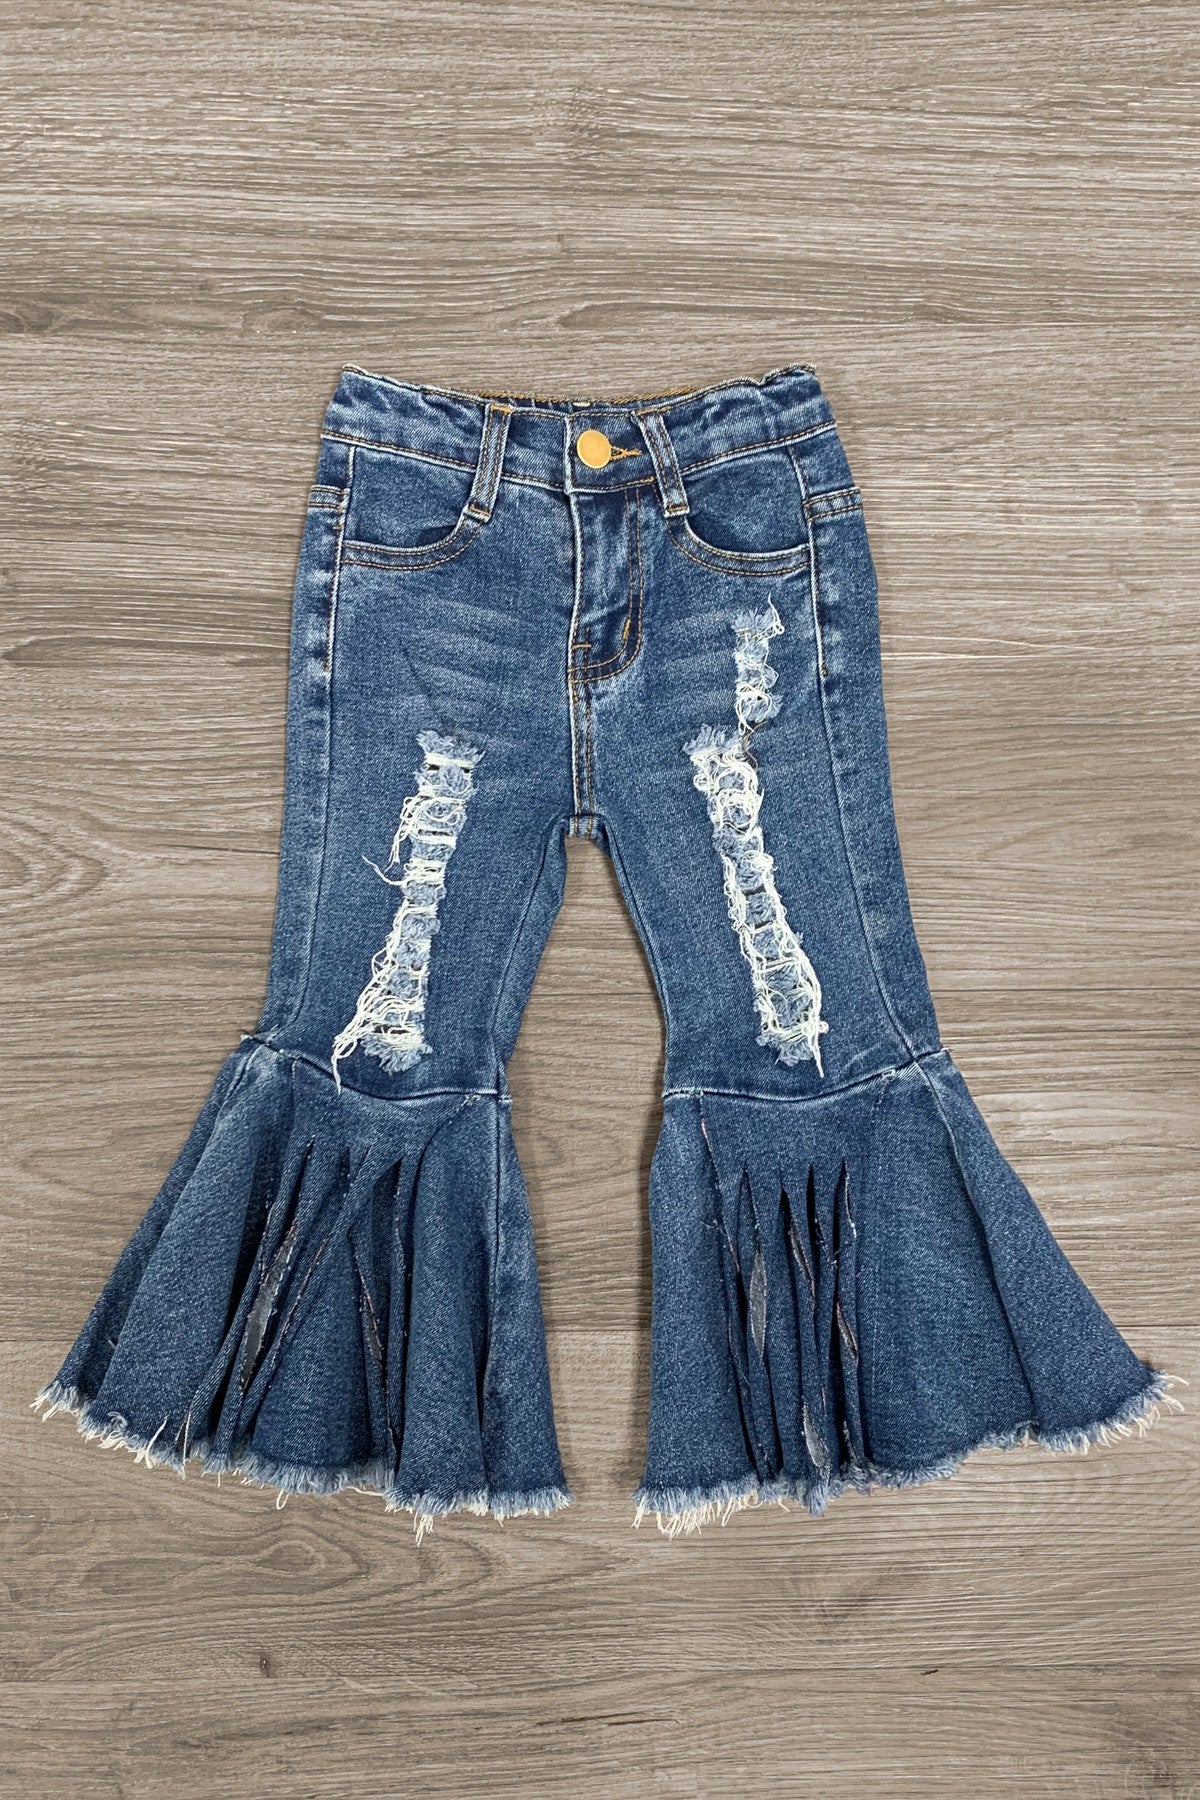 http://sparkleinpink.com/cdn/shop/products/distressed-denim-bell-bottom-jeans-bottom-sparkle-in-pink-102709.jpg?v=1707960823